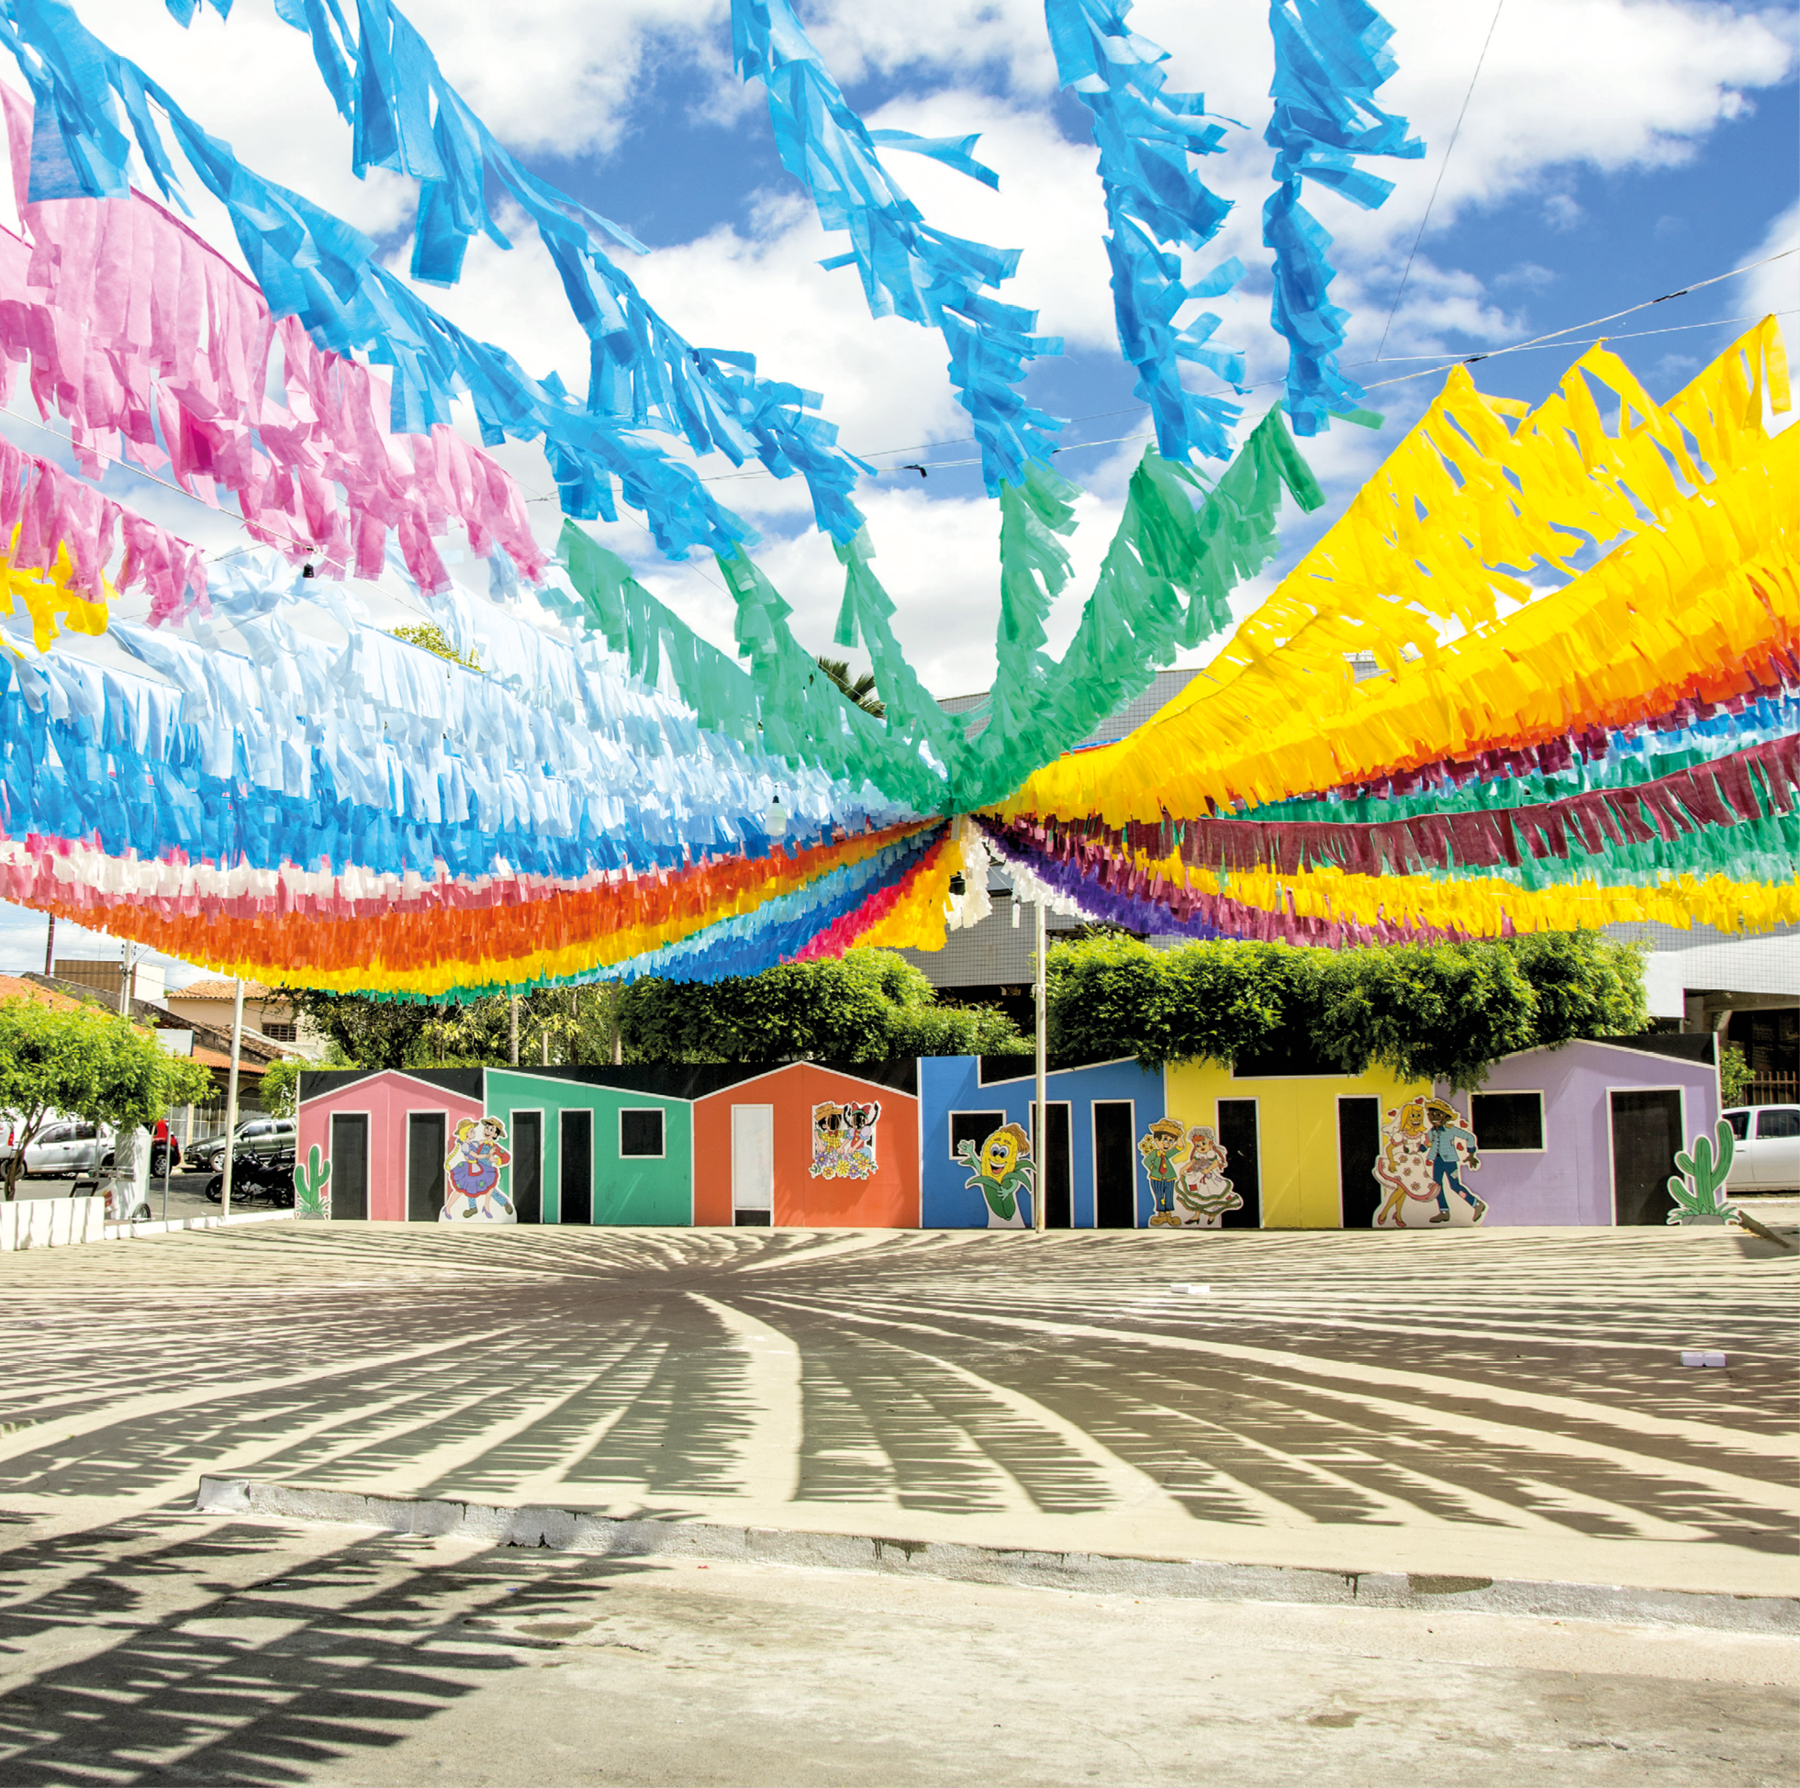 Fotografia. Vista parcial de praça com diversas fileiras de bandeirinhas coloridas penduradas. Ao fundo, casas coloridas e árvores